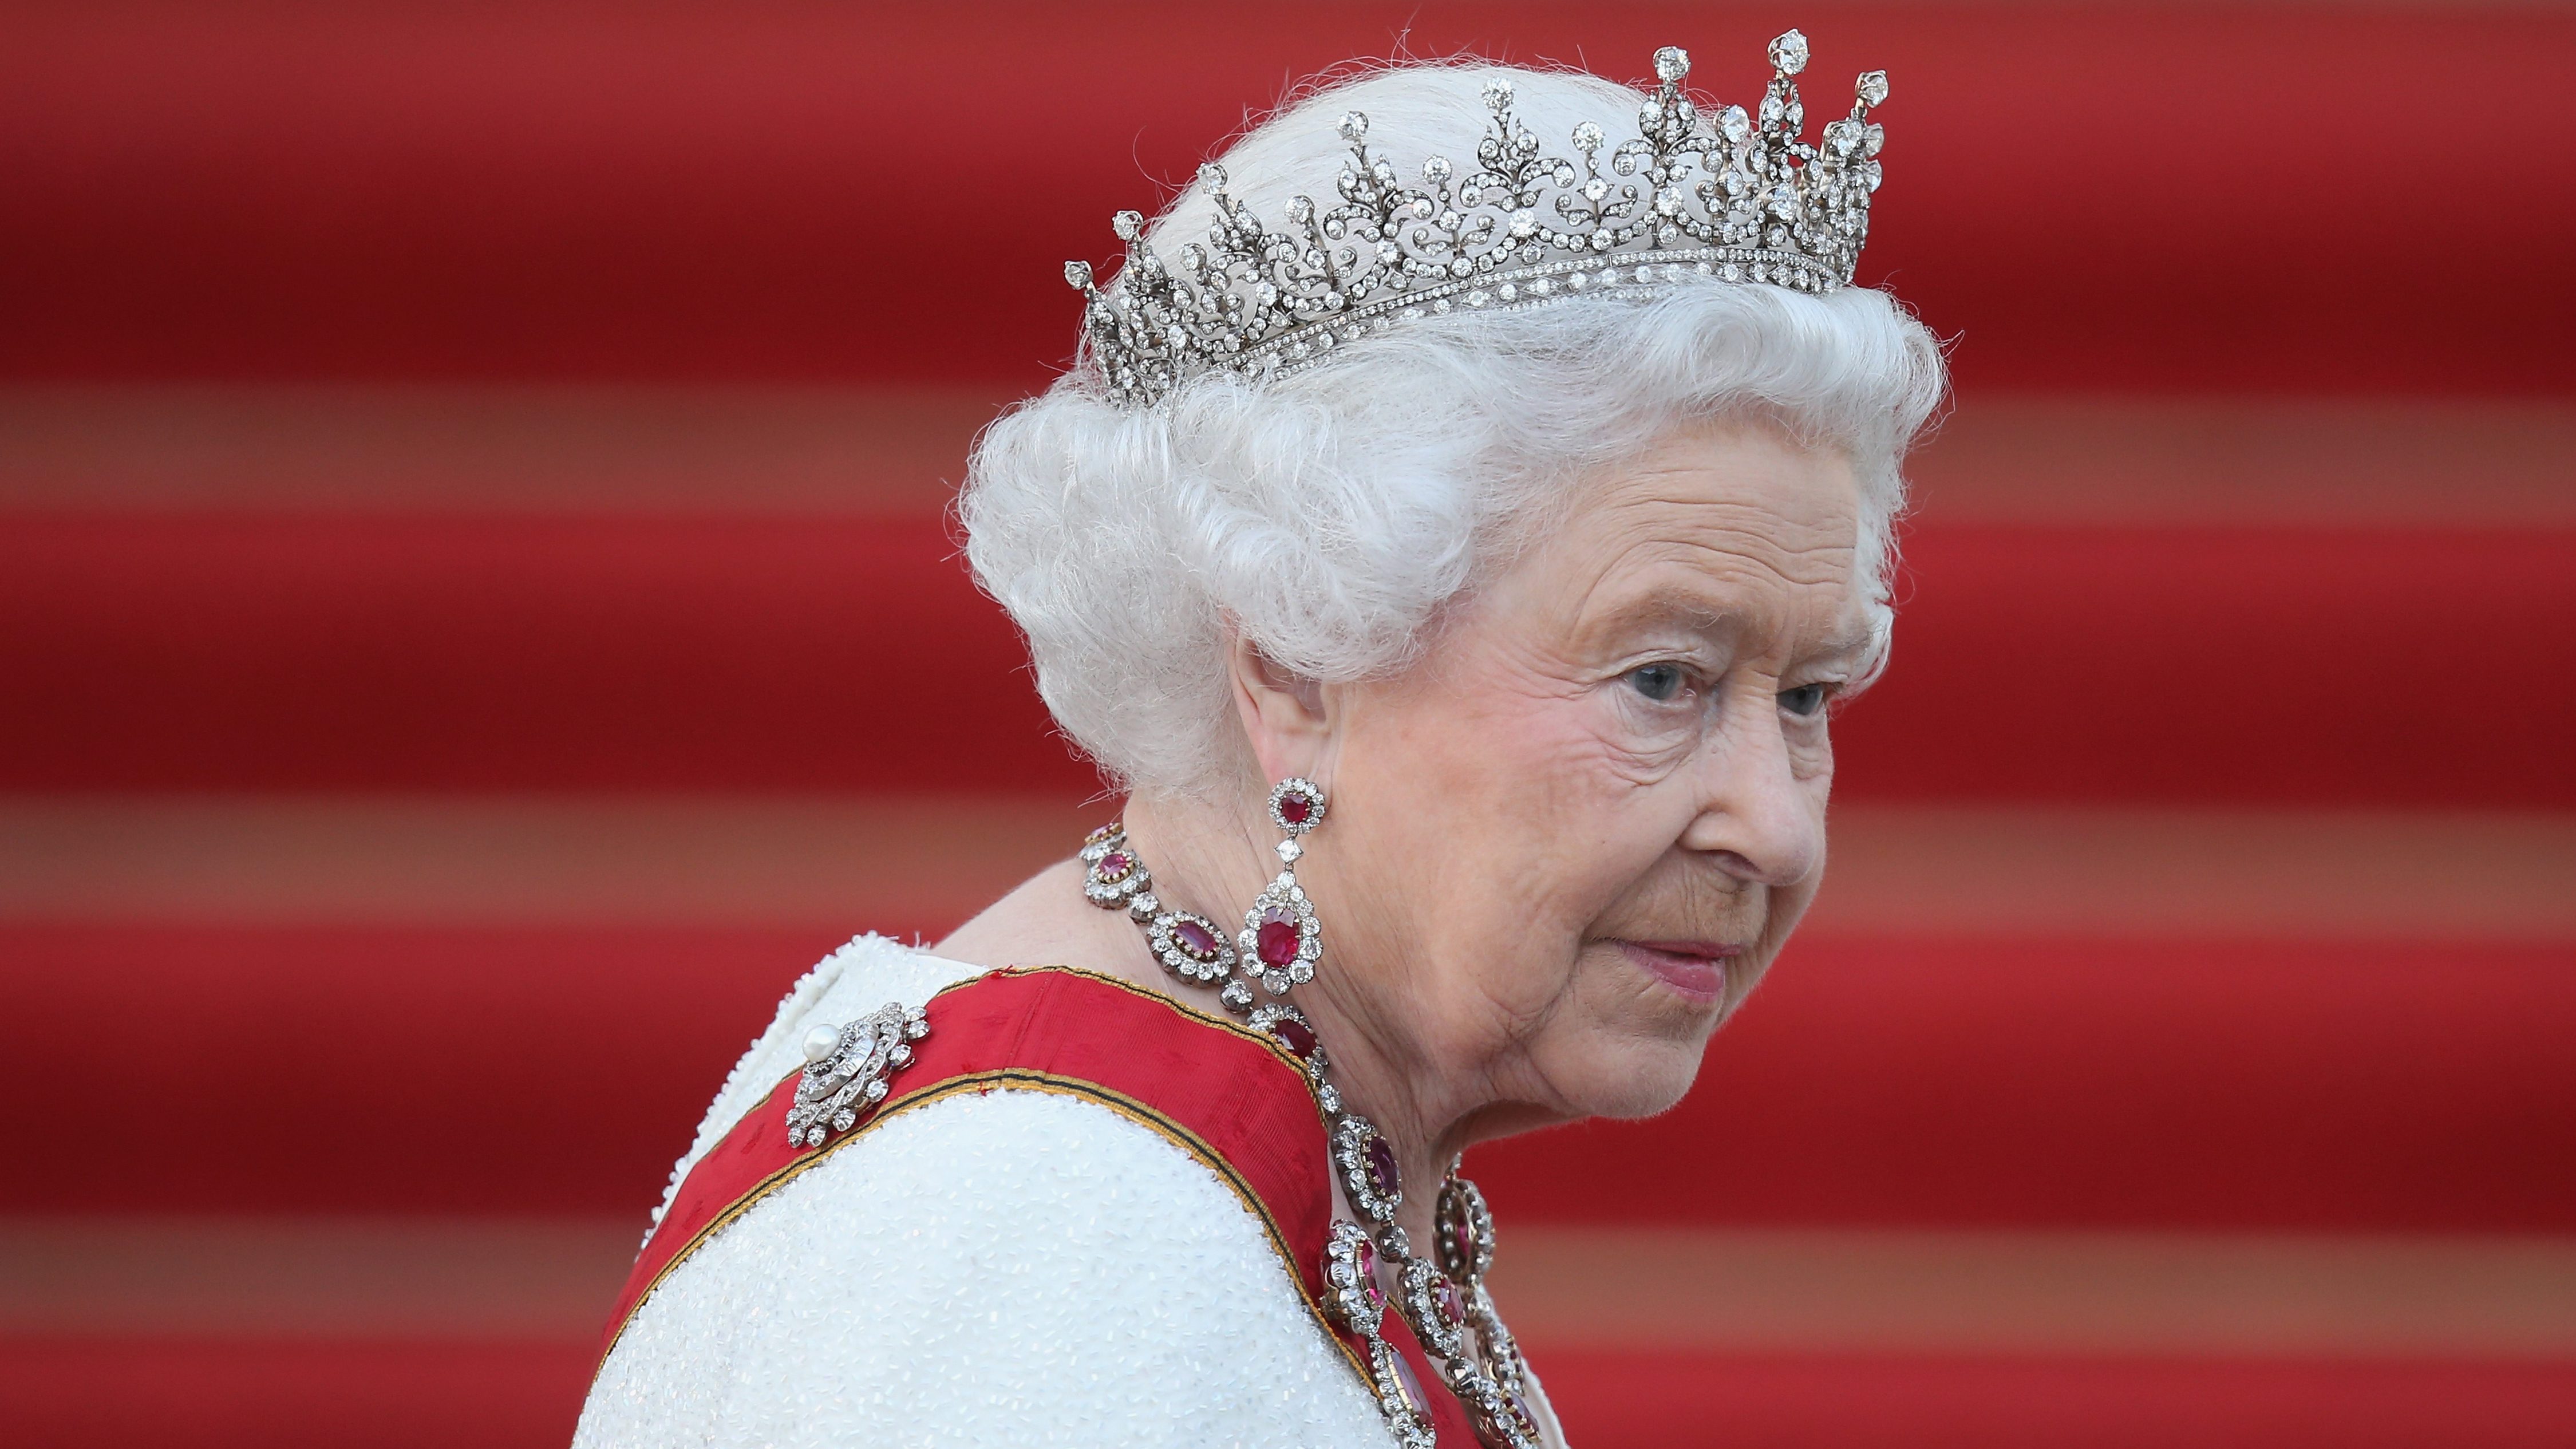 Nem ült fel ugyan a vastrónra, de a sajátját már hetven éve foglalja el II. Erzsébet